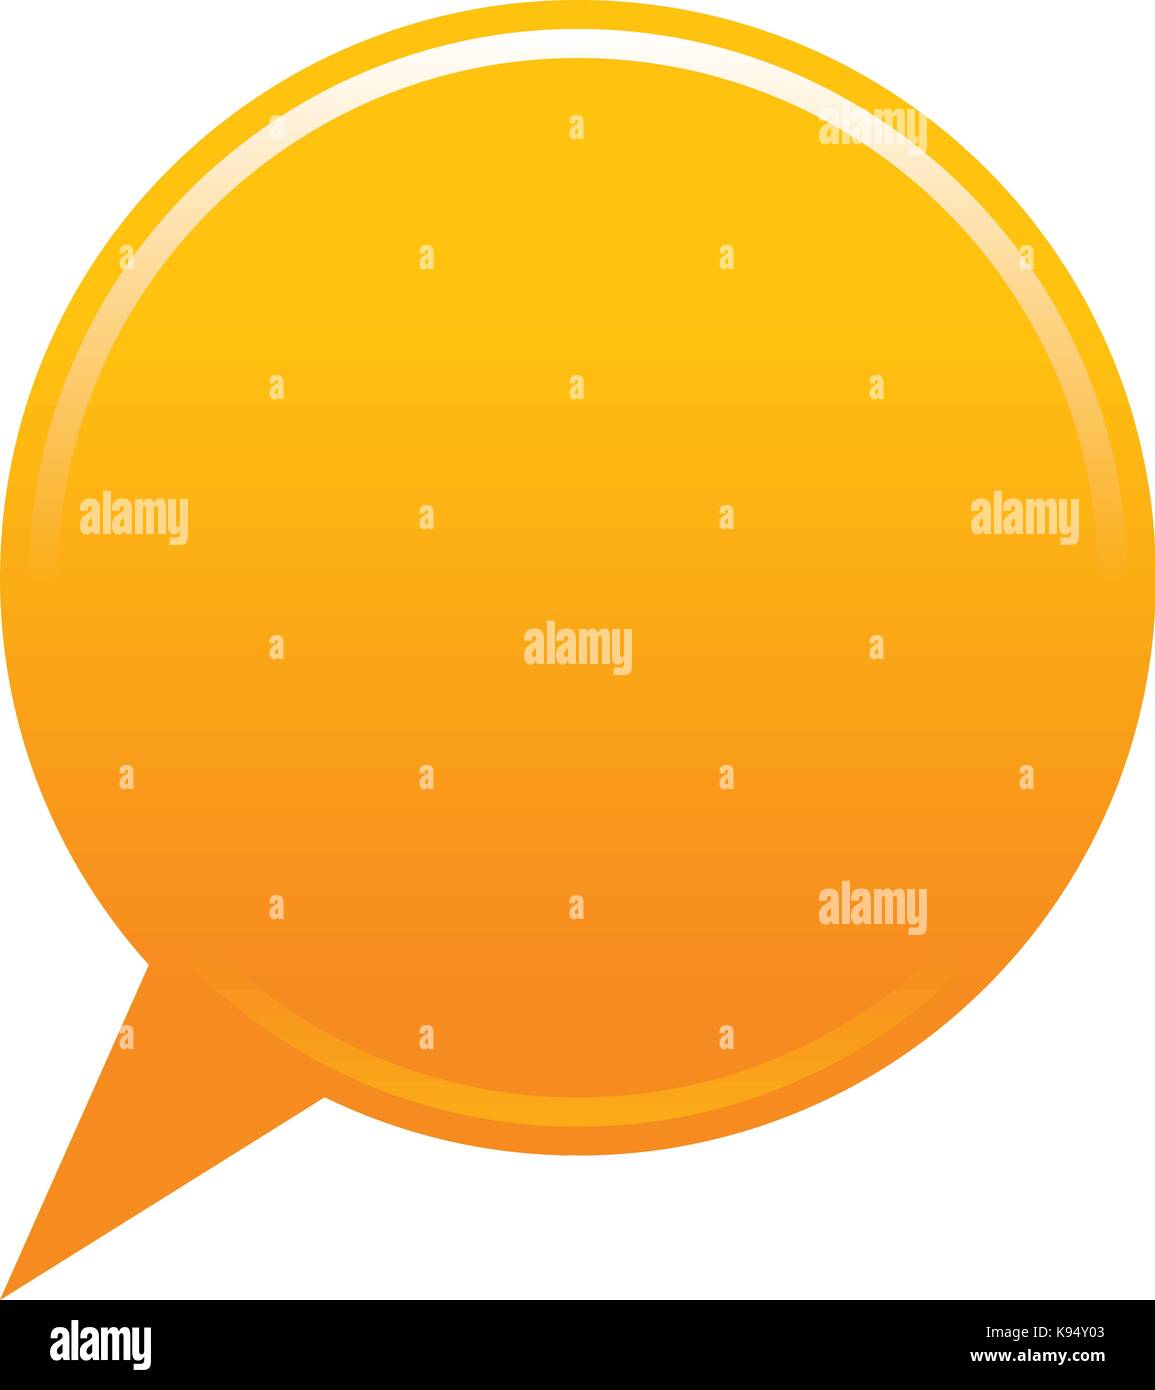 Orange mappa piatta pin posizione vuota icona cerchio forma vuota forma isolata. illustrazione vettoriale di un elemento grafico per il web design internet Illustrazione Vettoriale